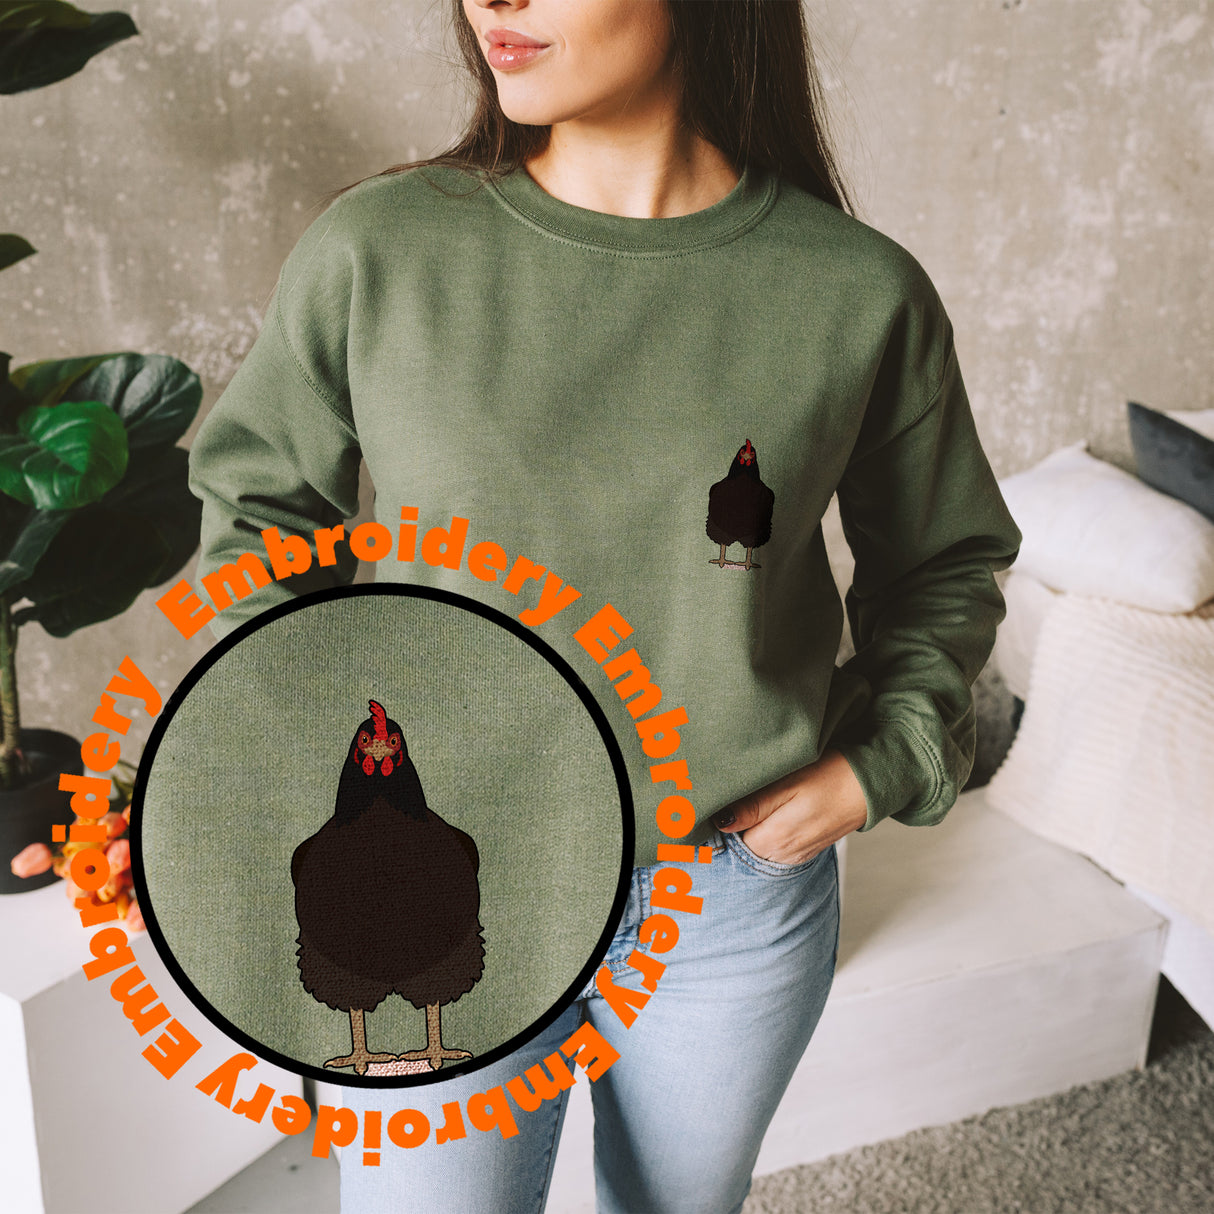 Jersey Giant Cockerel Embroidery Adult Unisex Sweatshirt